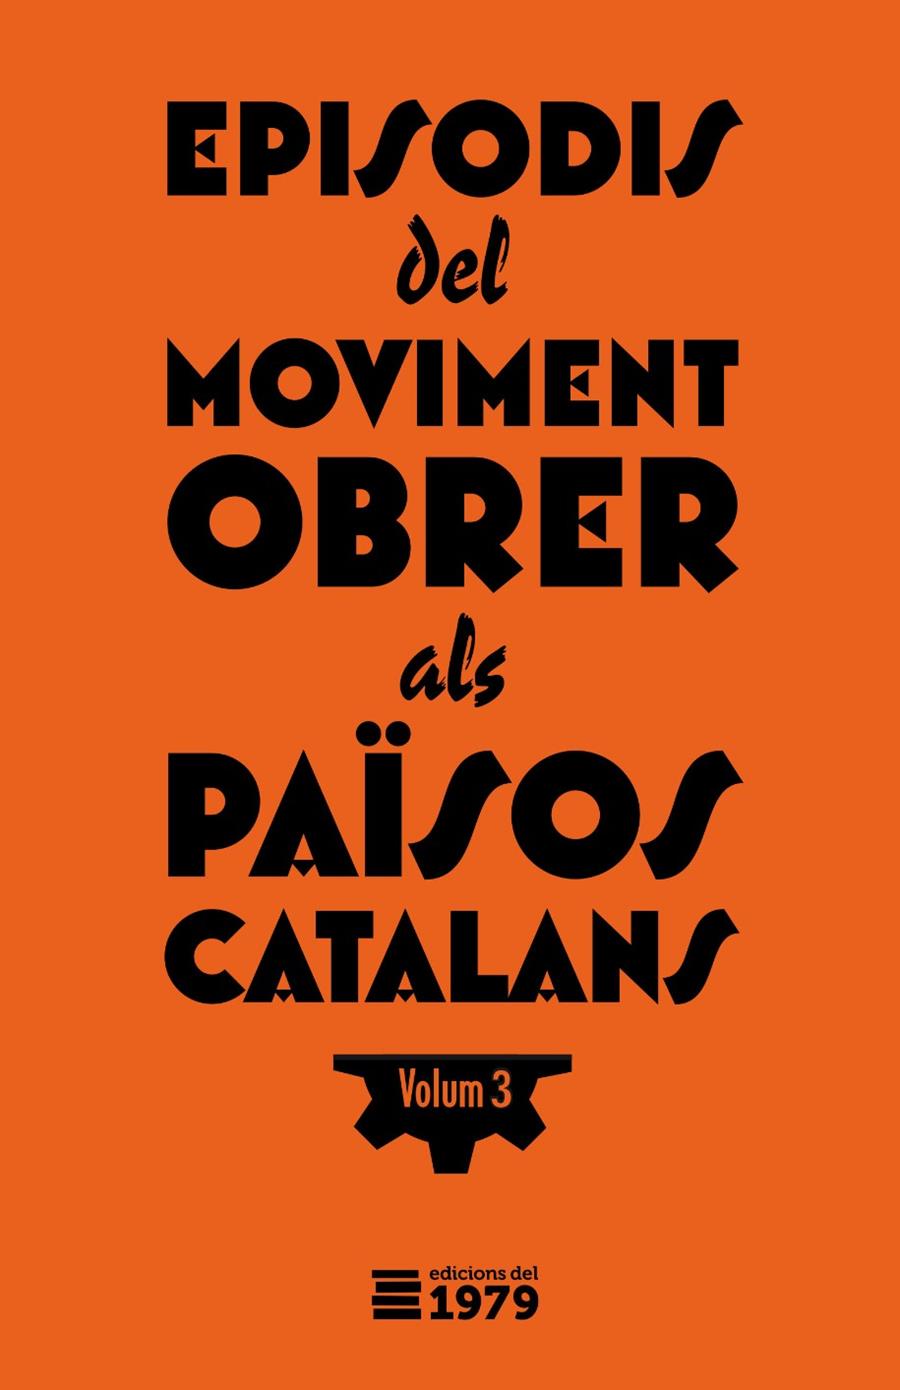 Episodis del moviment obrer als Països Catlans 3 | Varios autores